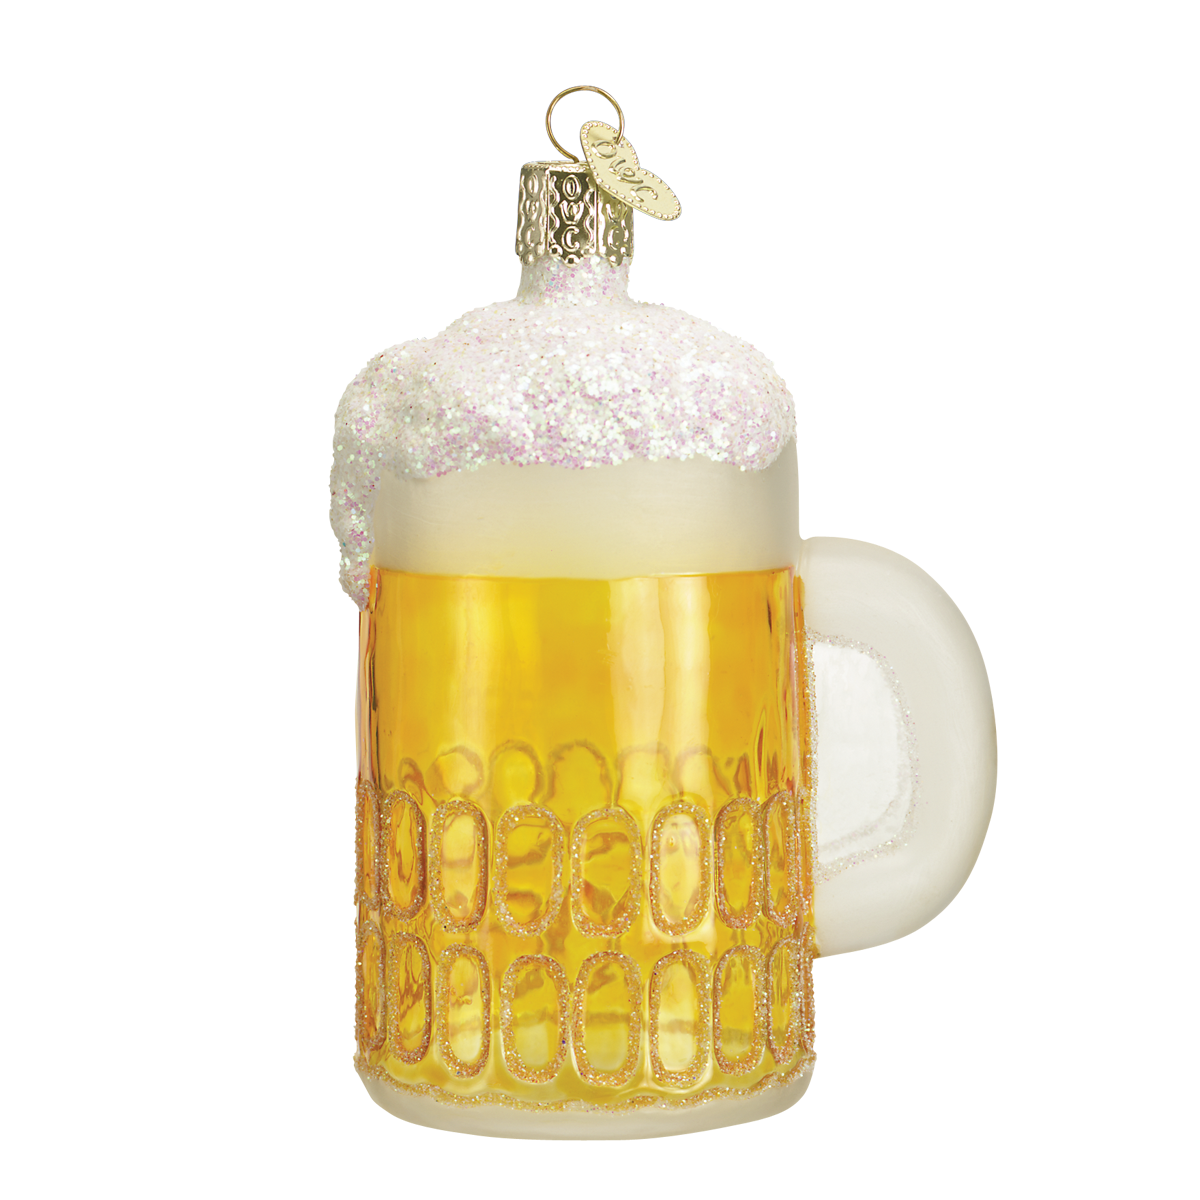 Old World Christmas - Mug of Beer Ornament    